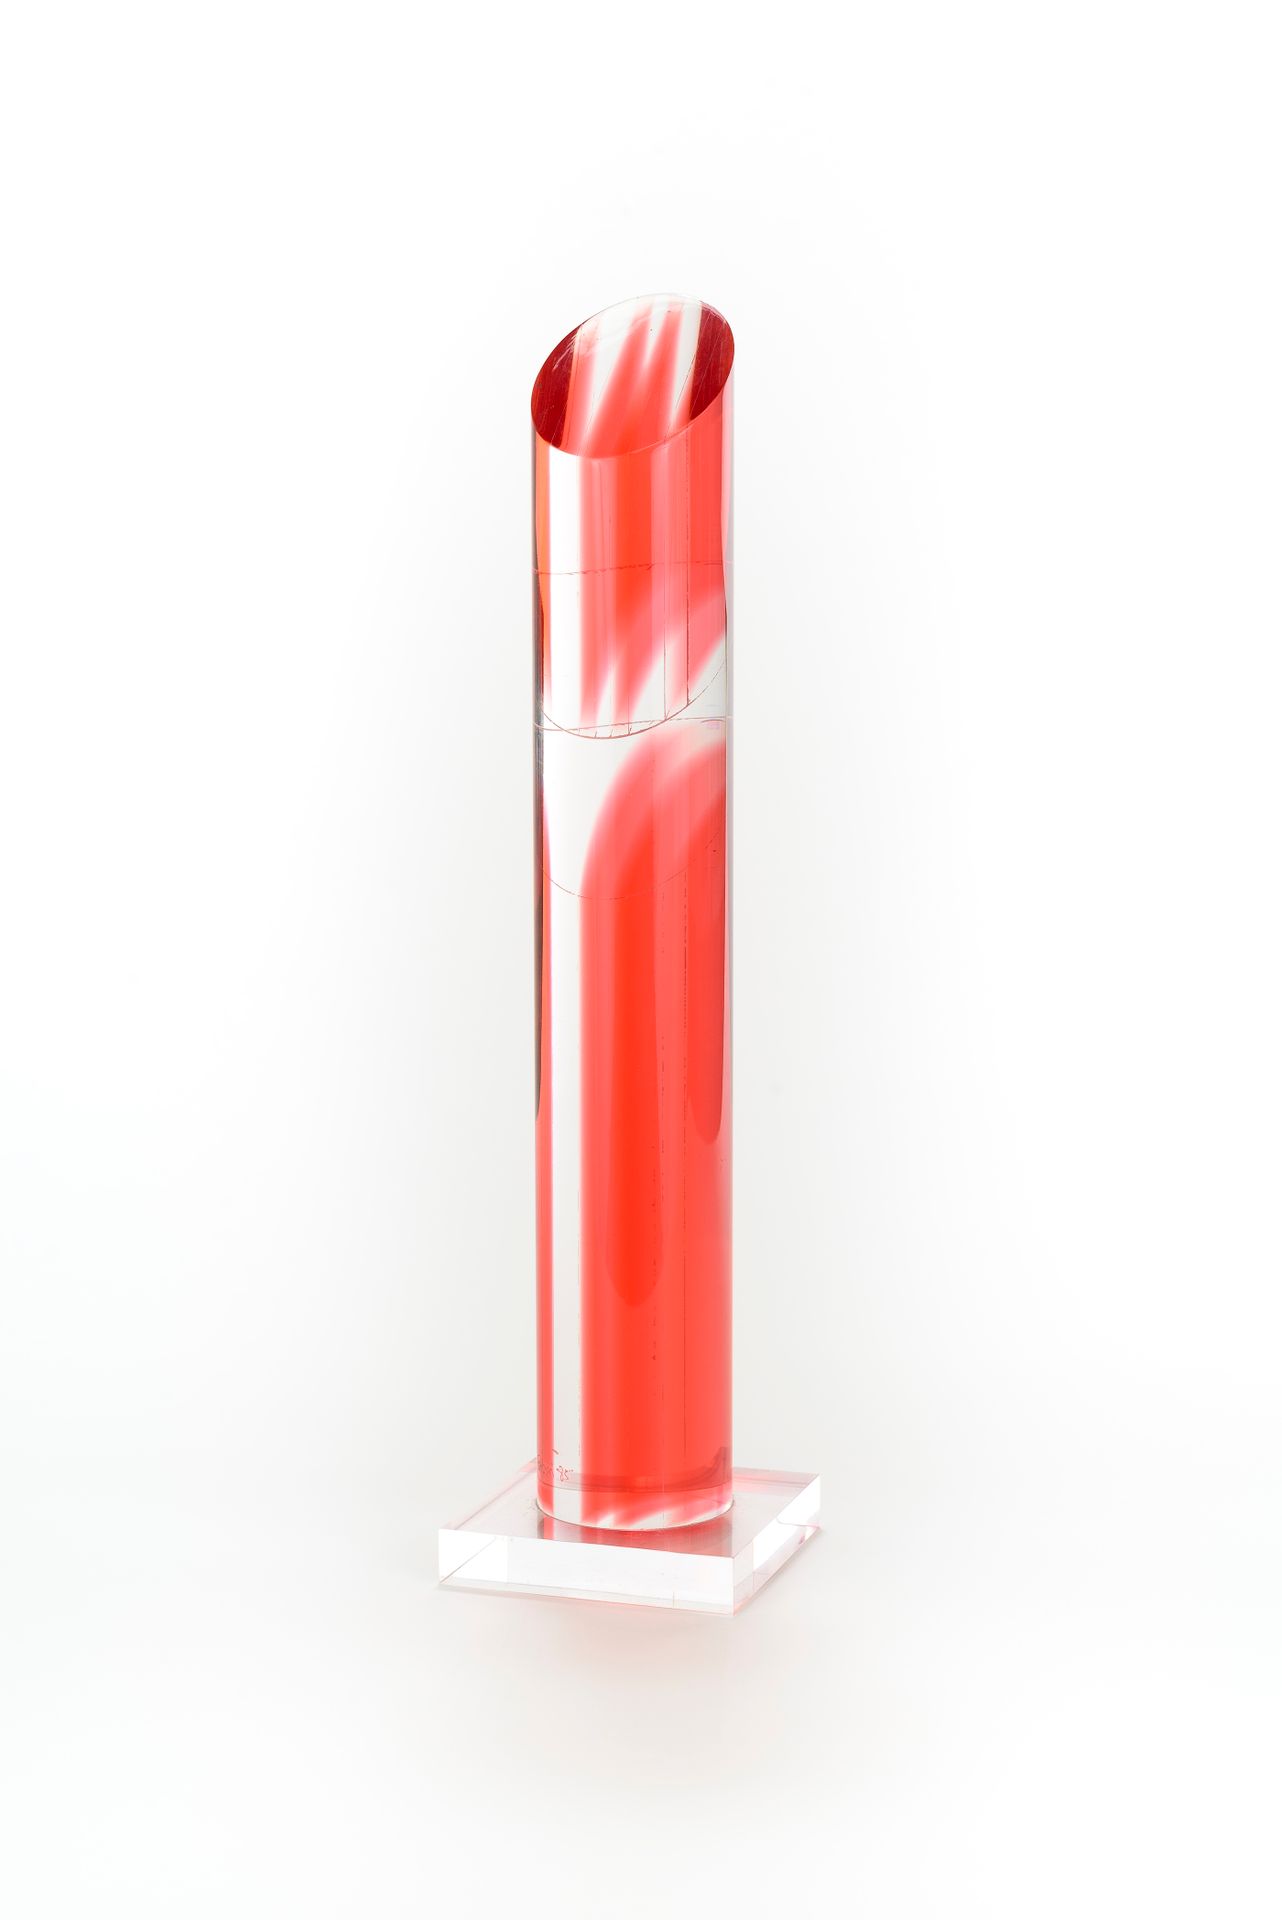 Null 让-克劳德-法尔希 (1940-2012)

小斜面柱（粉红色），1985年

乙烯基的聚甲基丙烯酸酯

签名和日期

高：42厘米